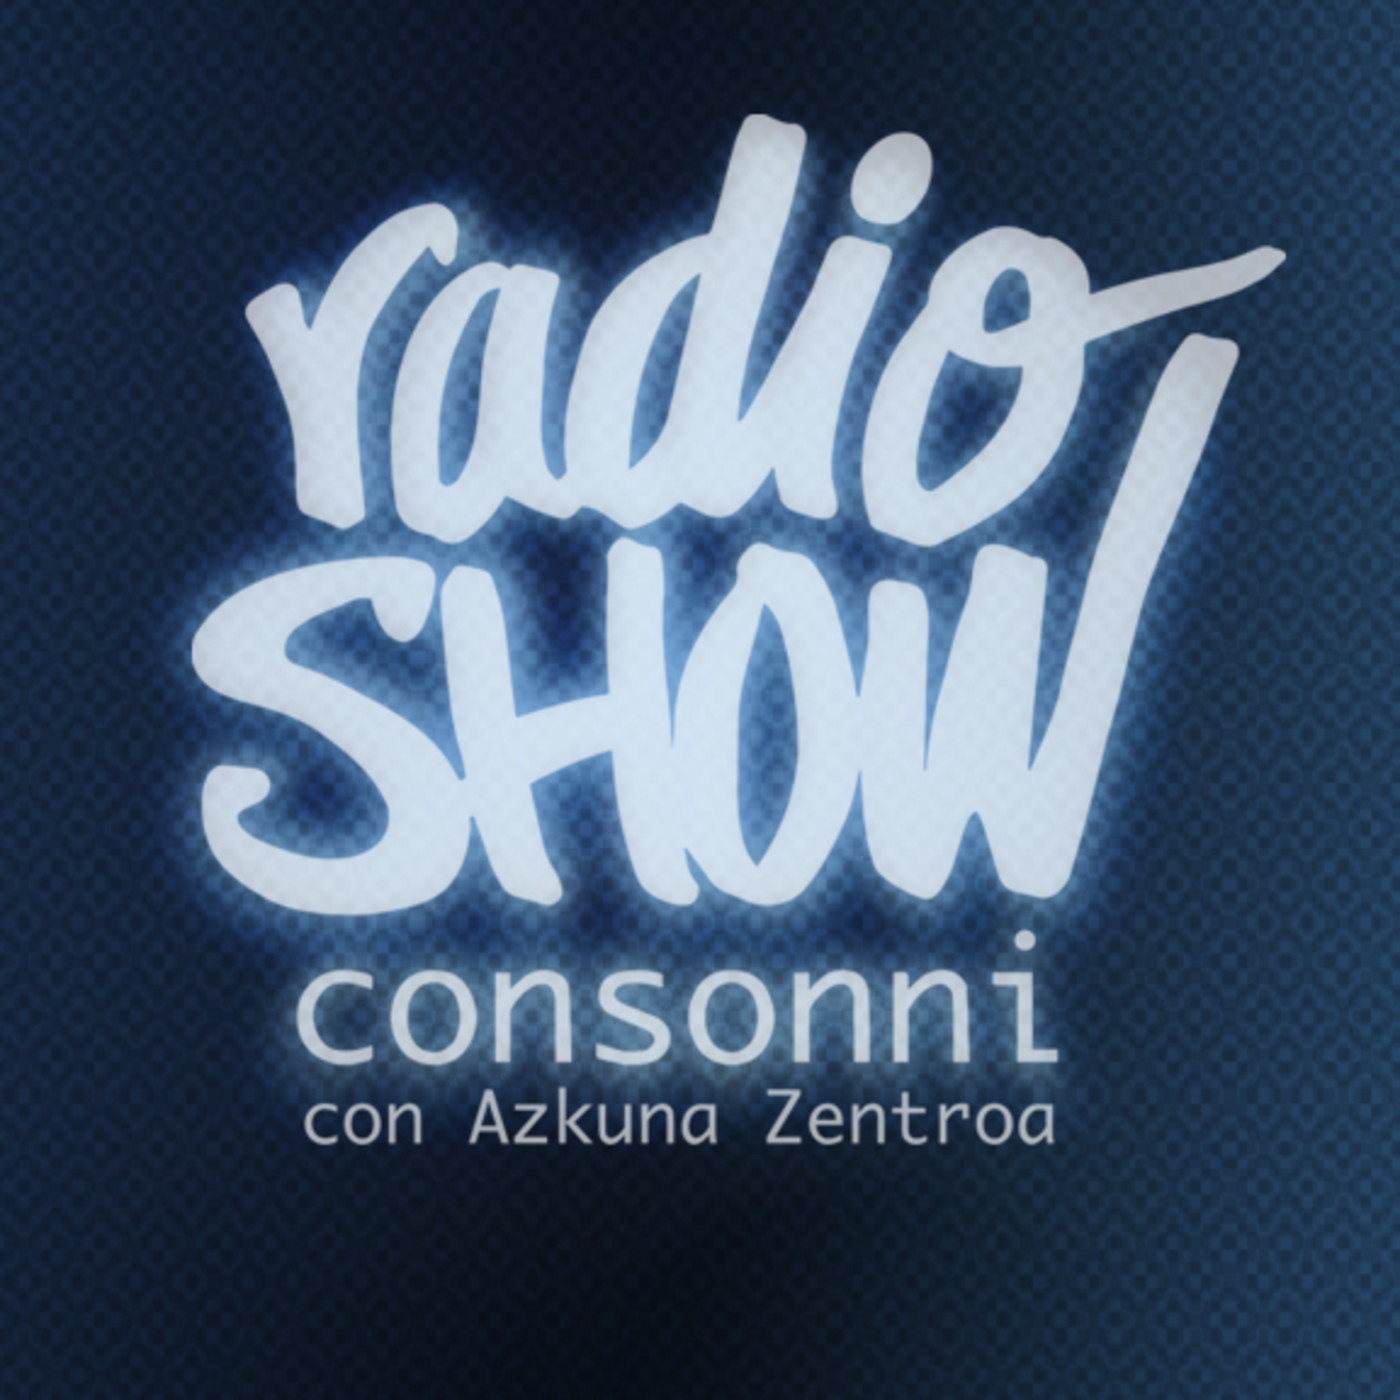 IRAGARKIA - RADIO SHOW CONSONNI AZrekin - Artea eta Irratia